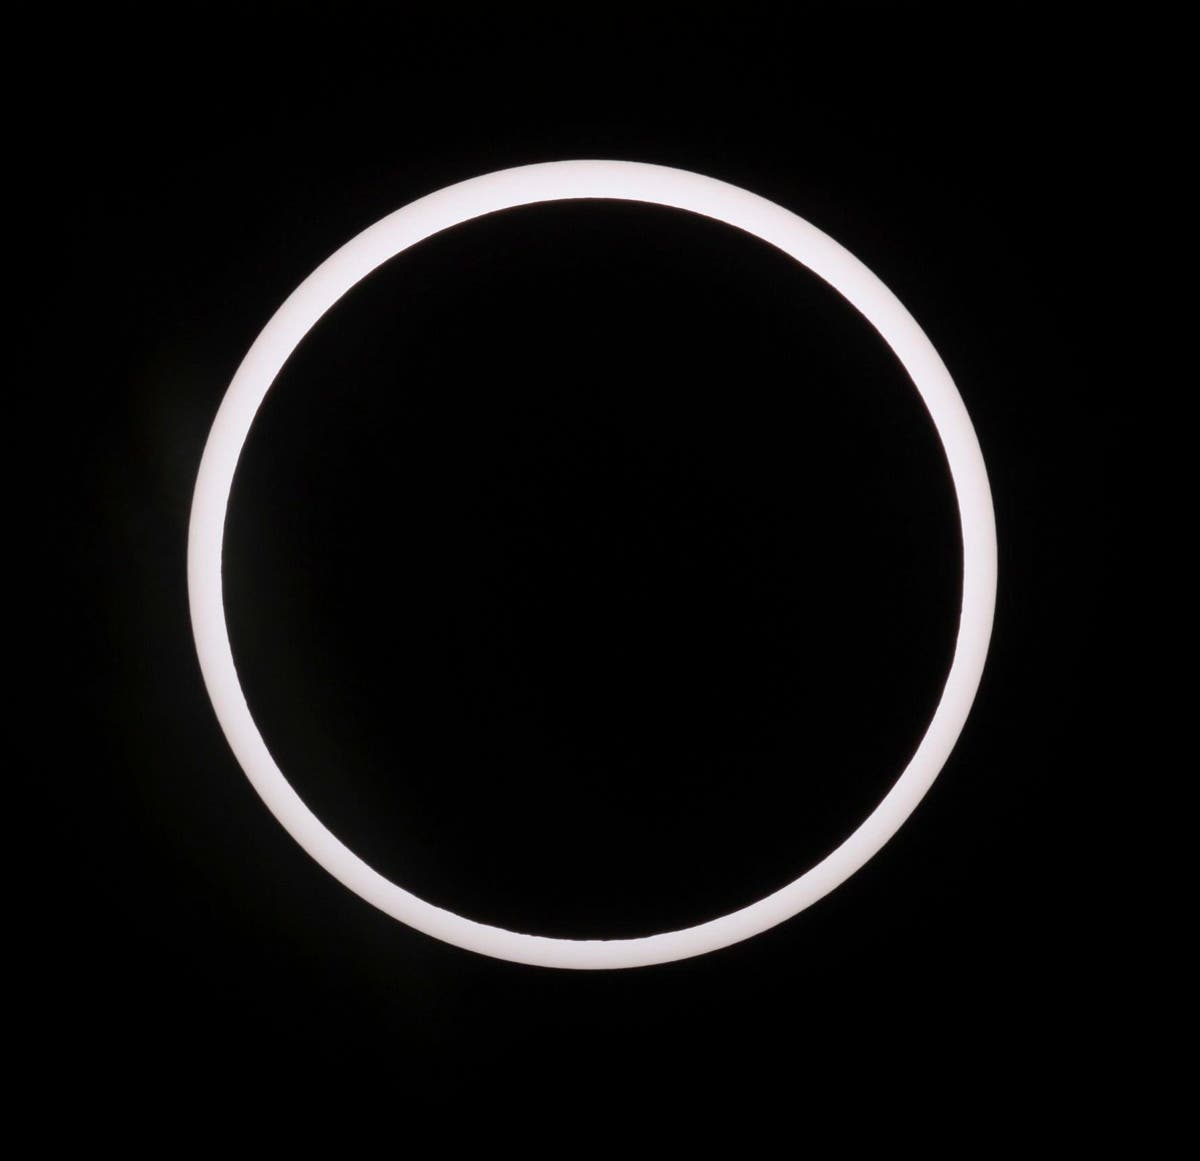 Die ringförmige Sonnenfinsternis vom 15. Januar 2010